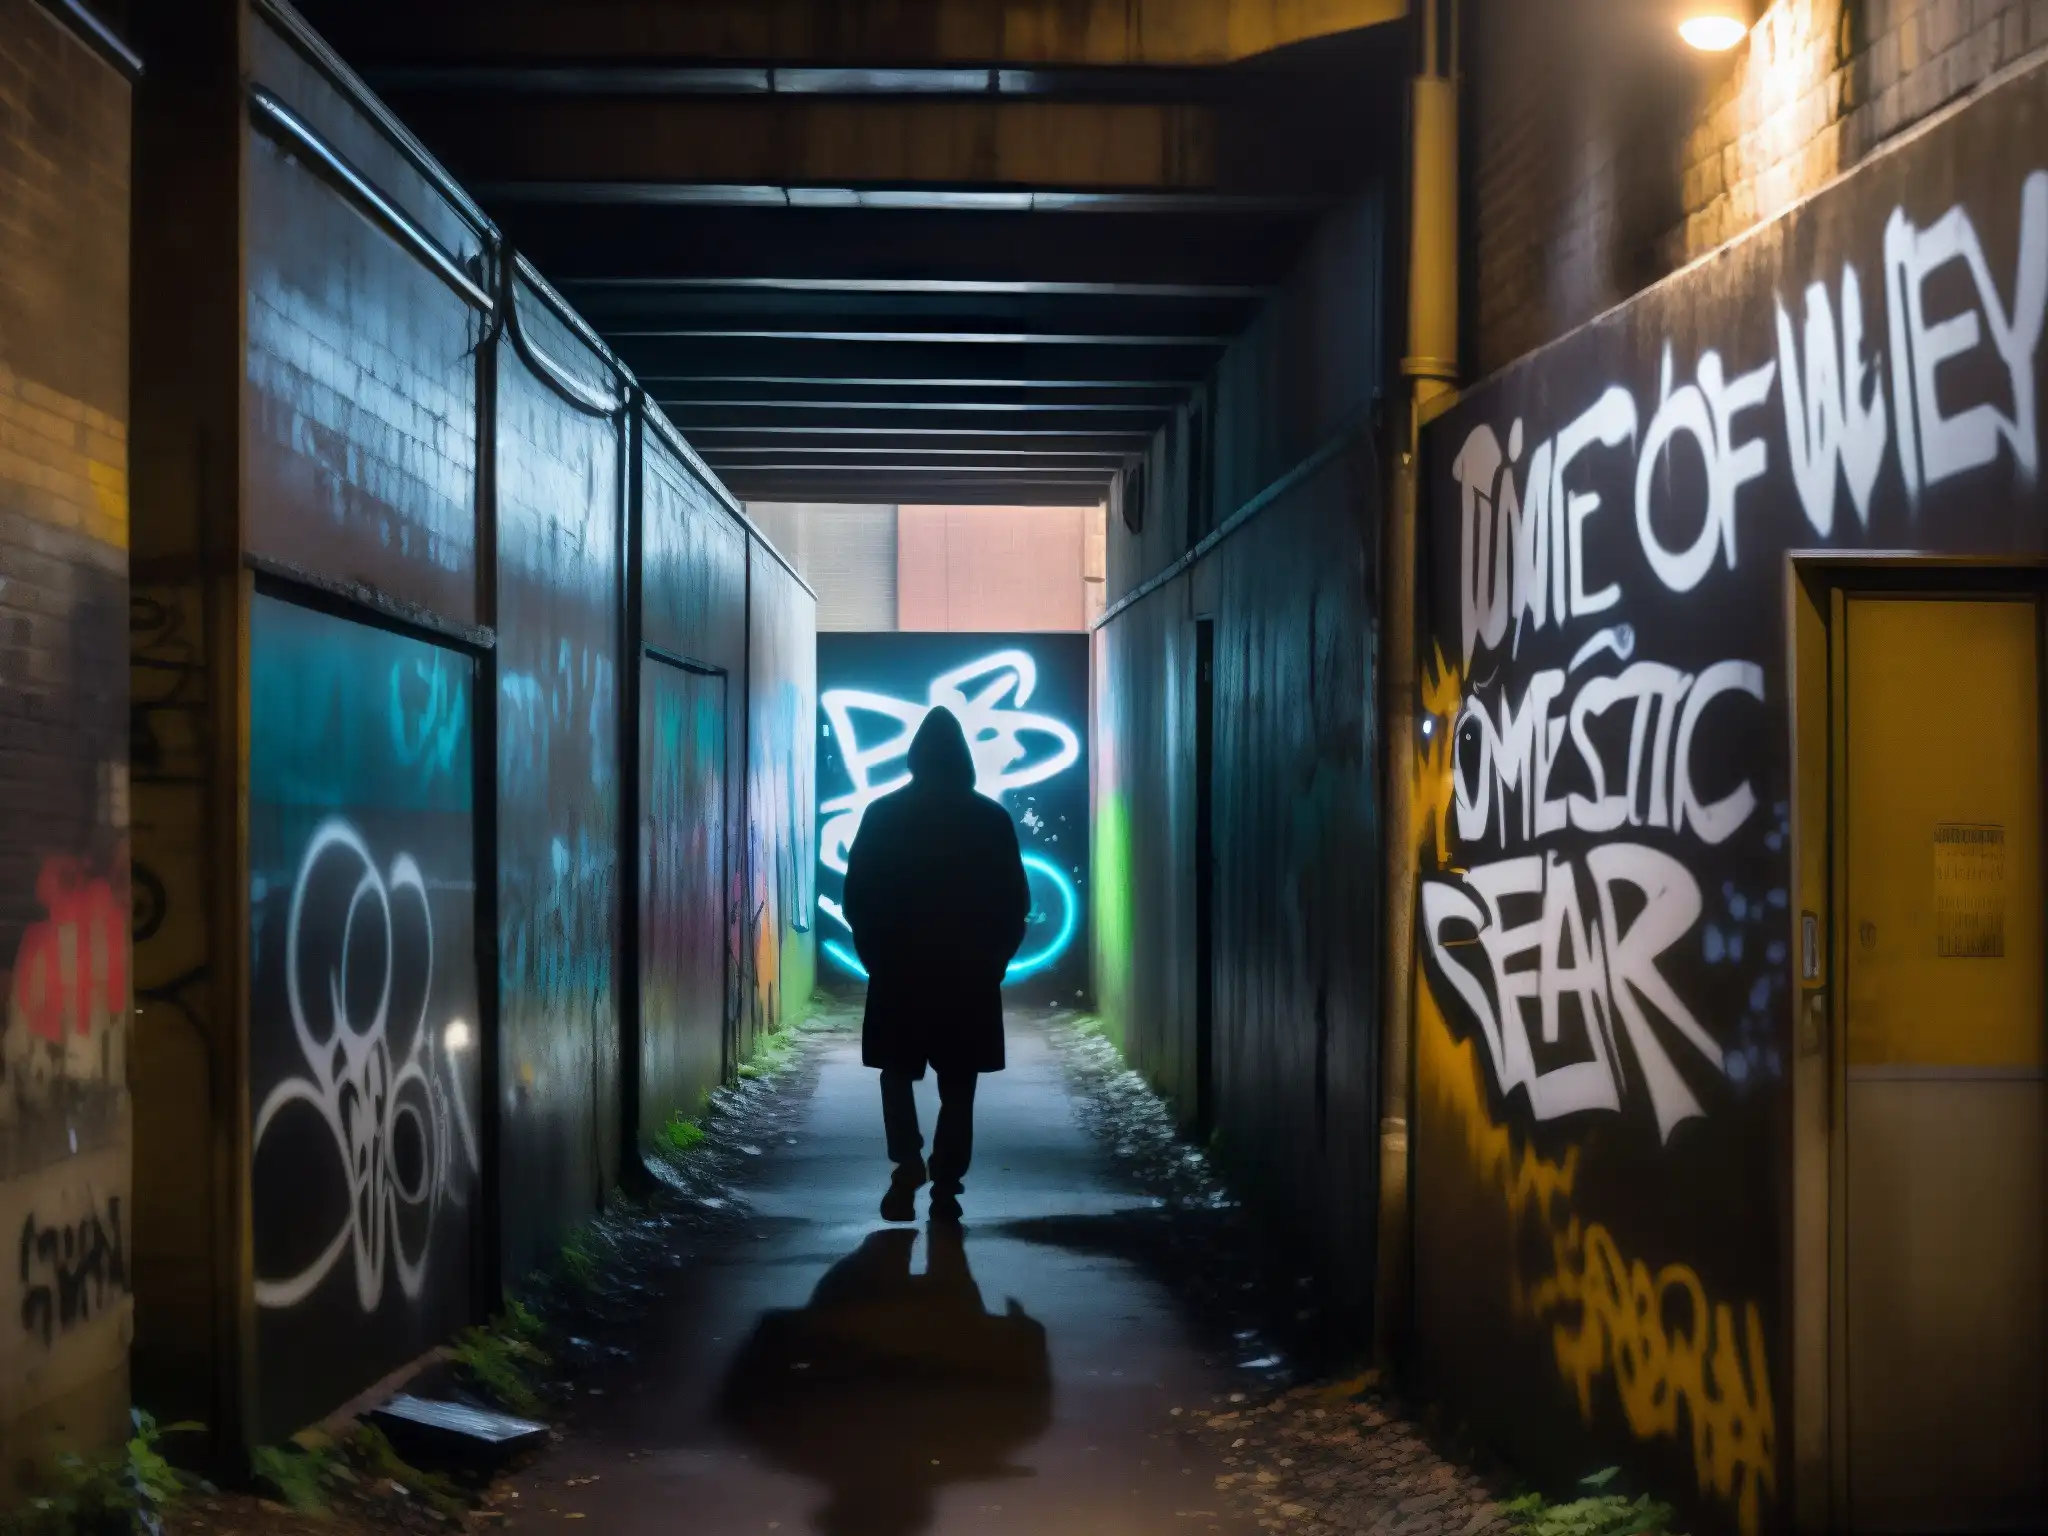 Un callejón urbano sombrío con grafitis y la silueta misteriosa de una figura en la distancia, creando un impacto psicológico de leyendas urbanas